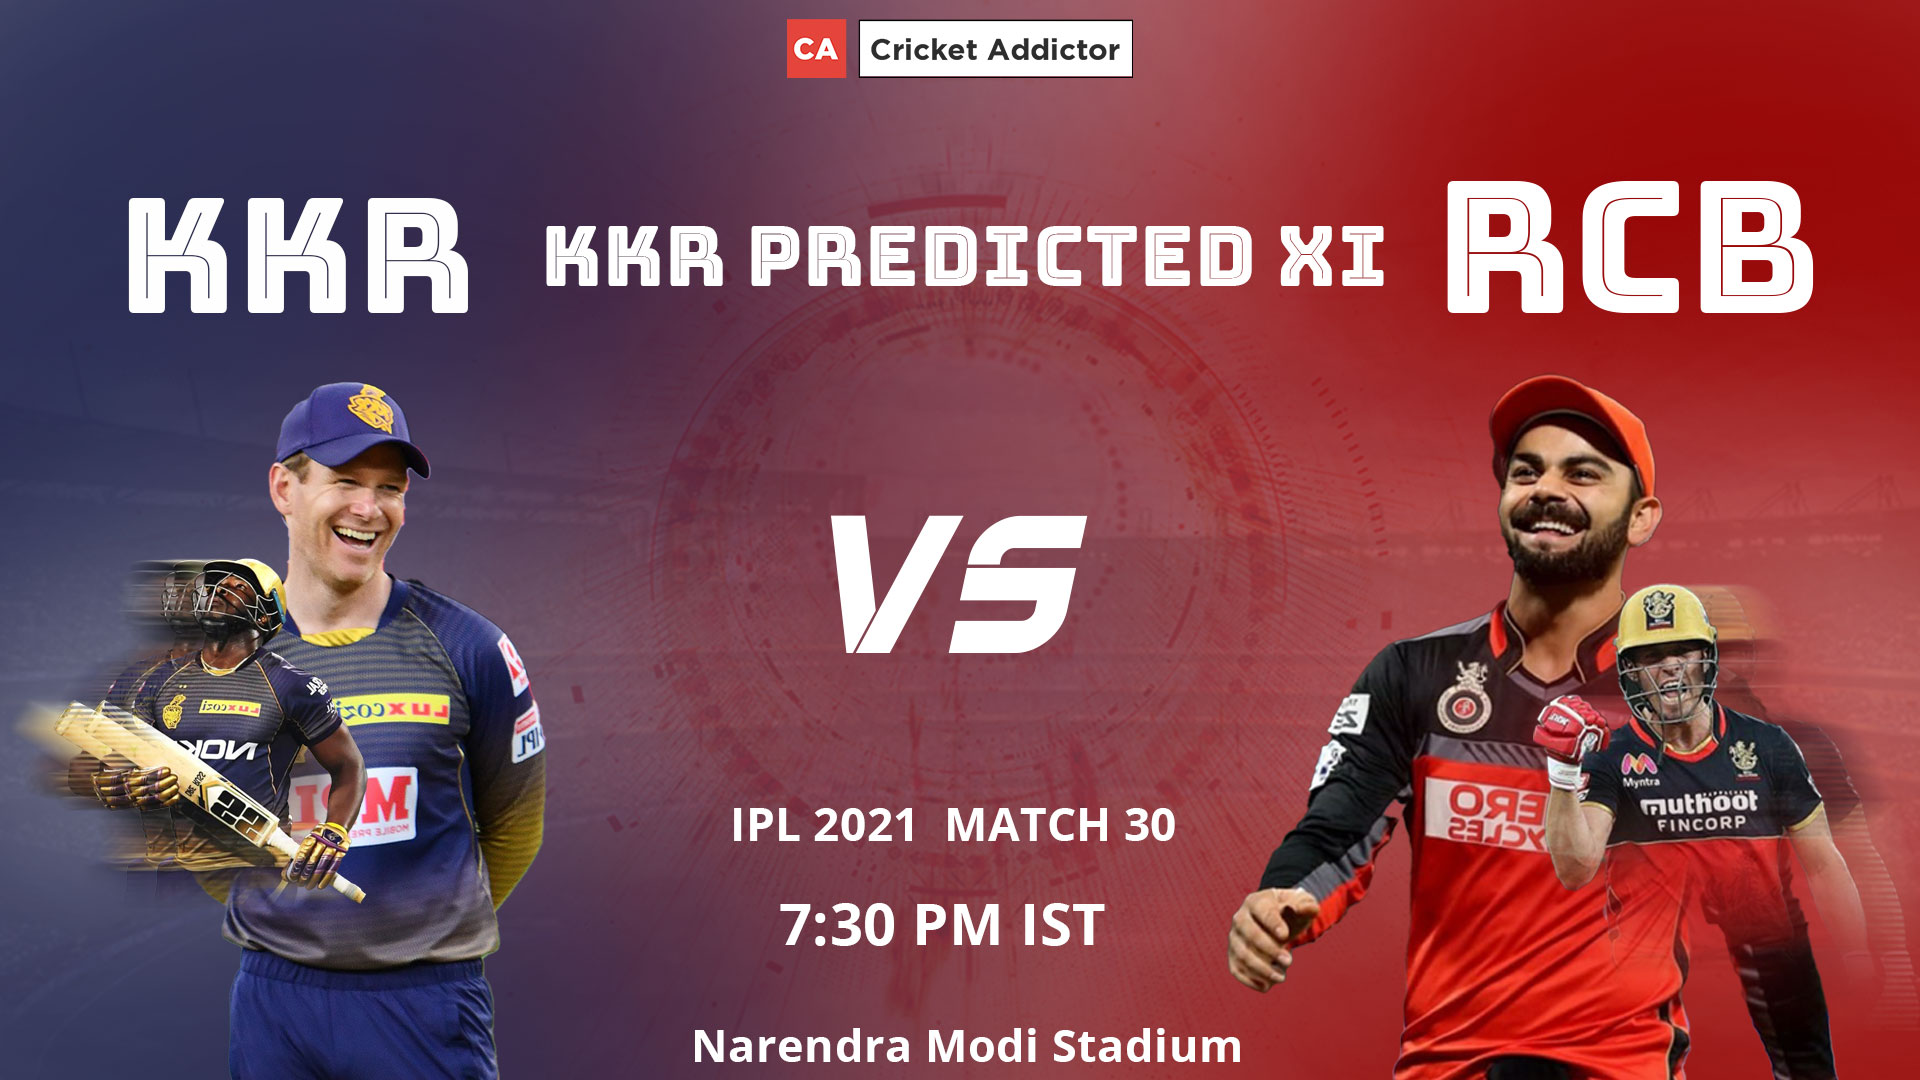 KKR, IPL 2021, Kolkata Knight Riders, Predicted playing XI, playing XI, KKR vs RCB